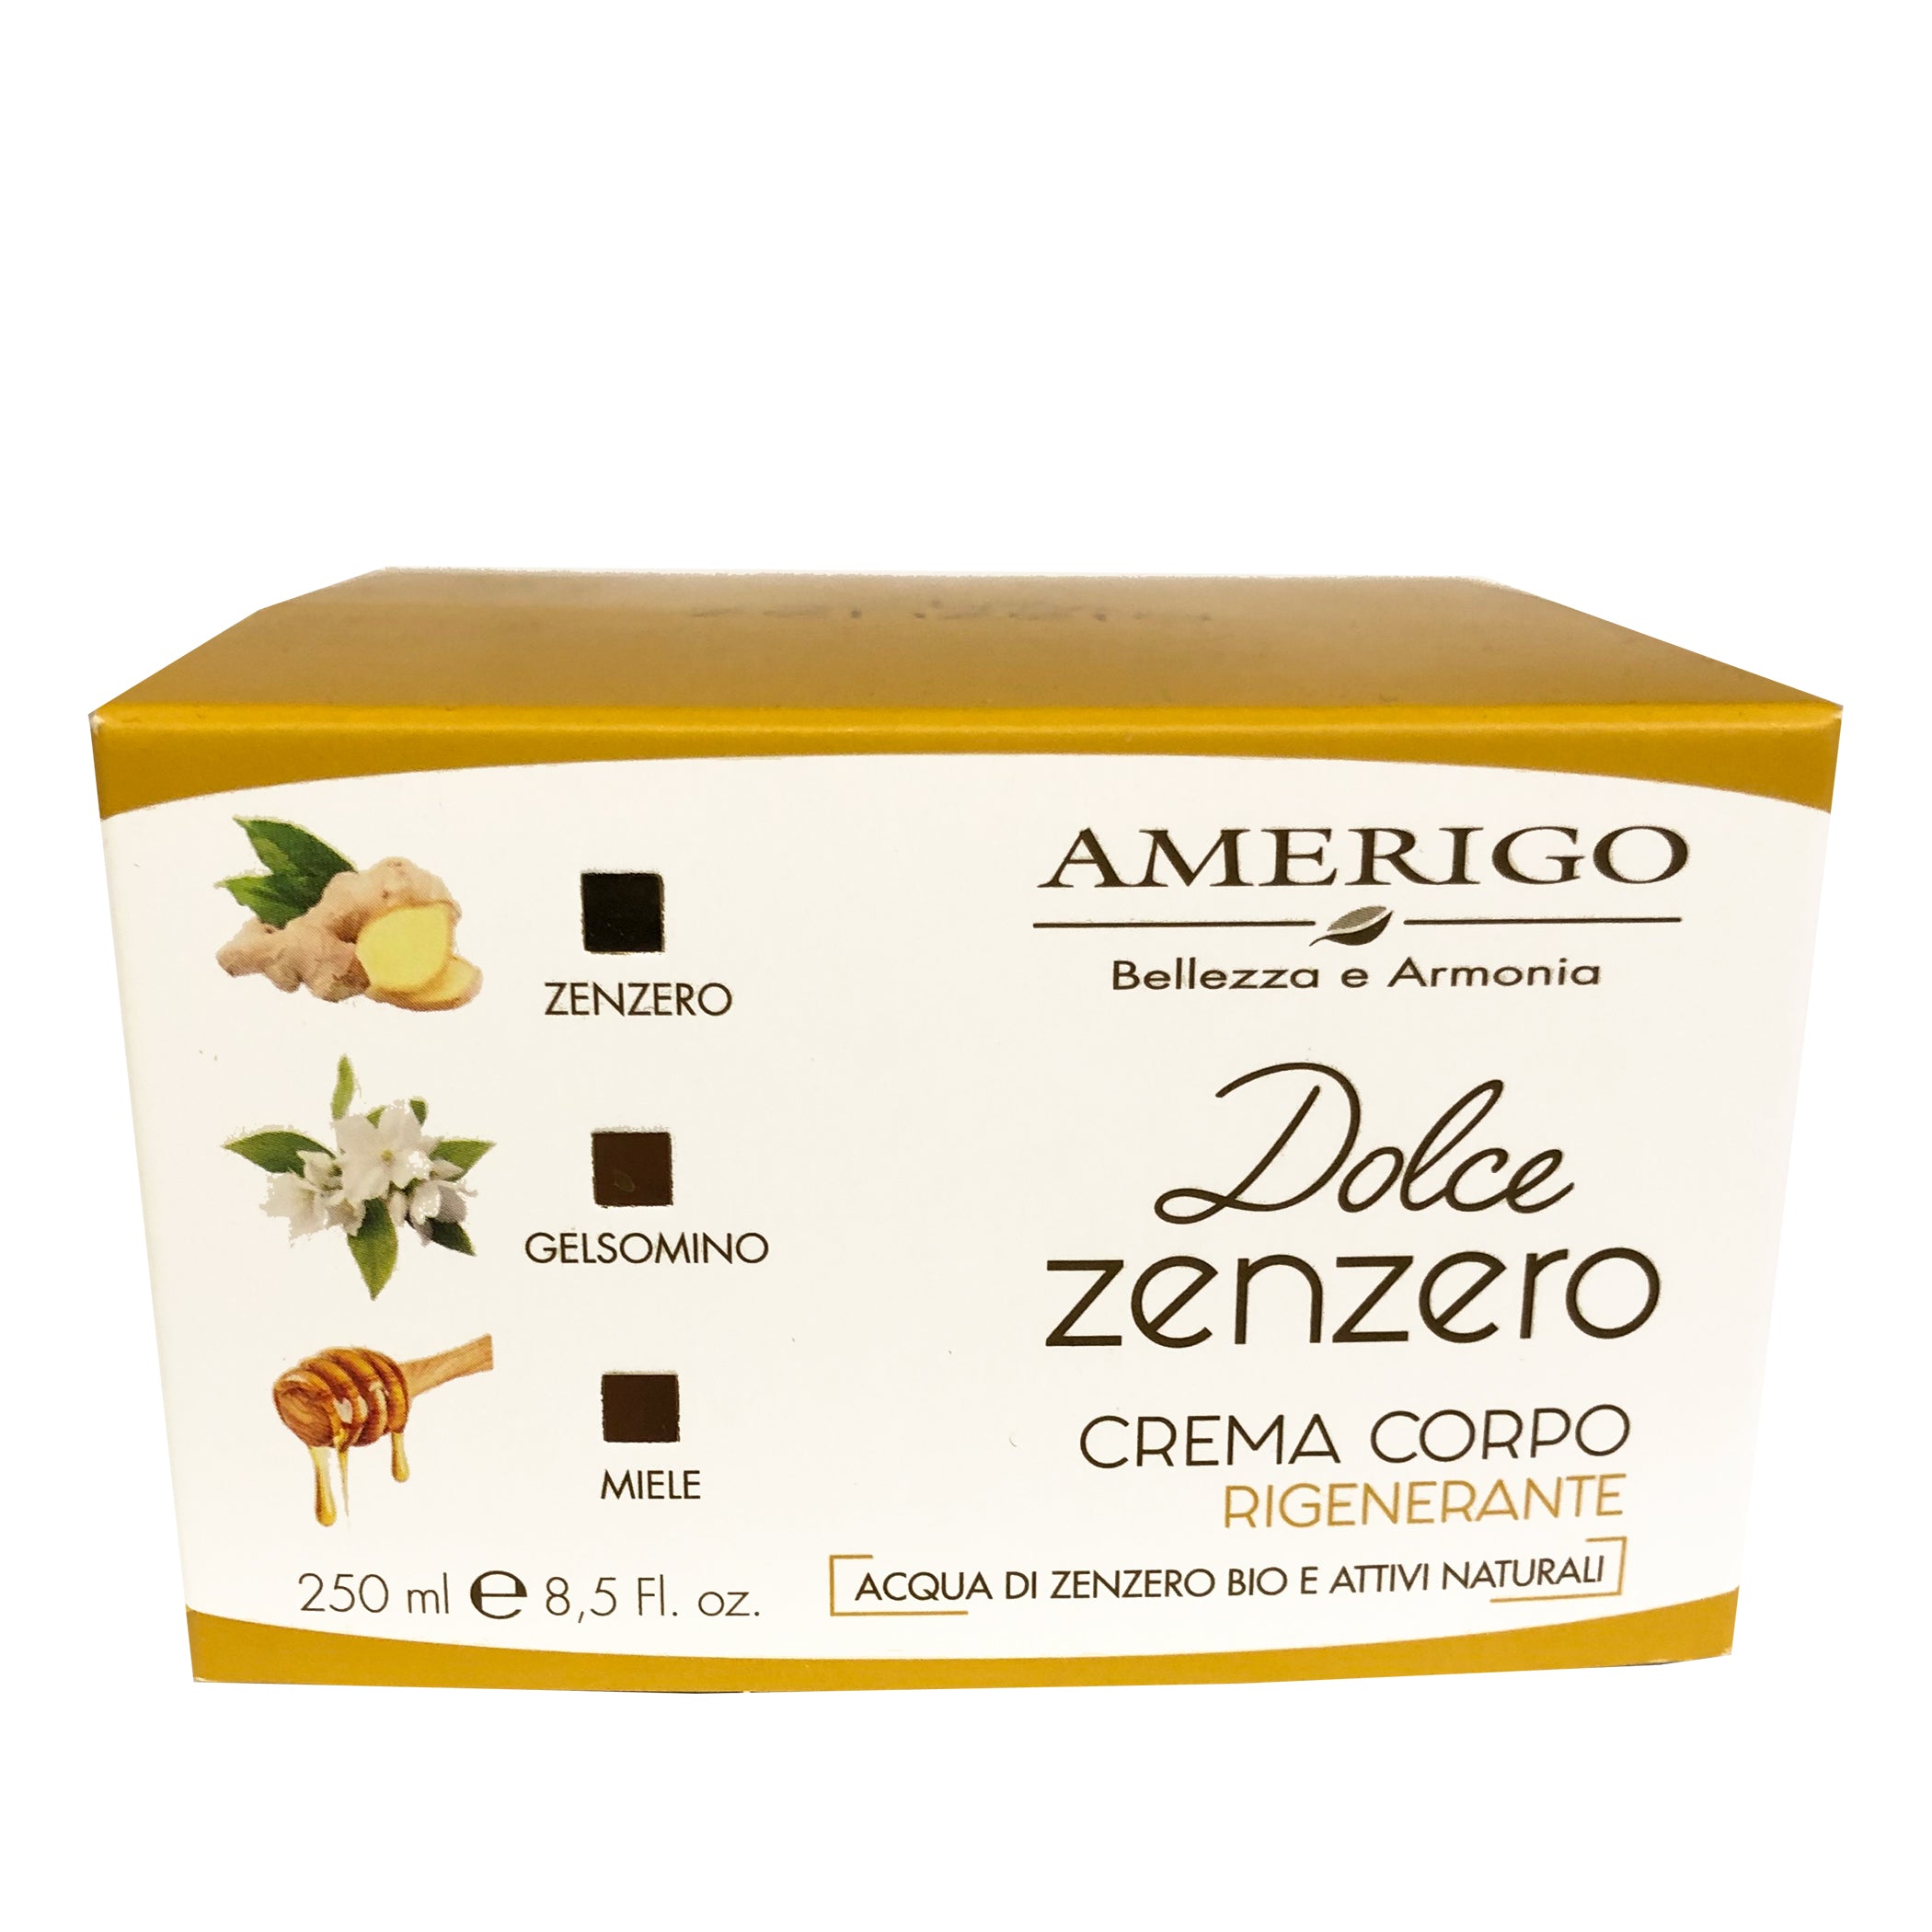 Prodotti Dolce Zenzero - Amerigo, Erboristeria Armonie Naturali